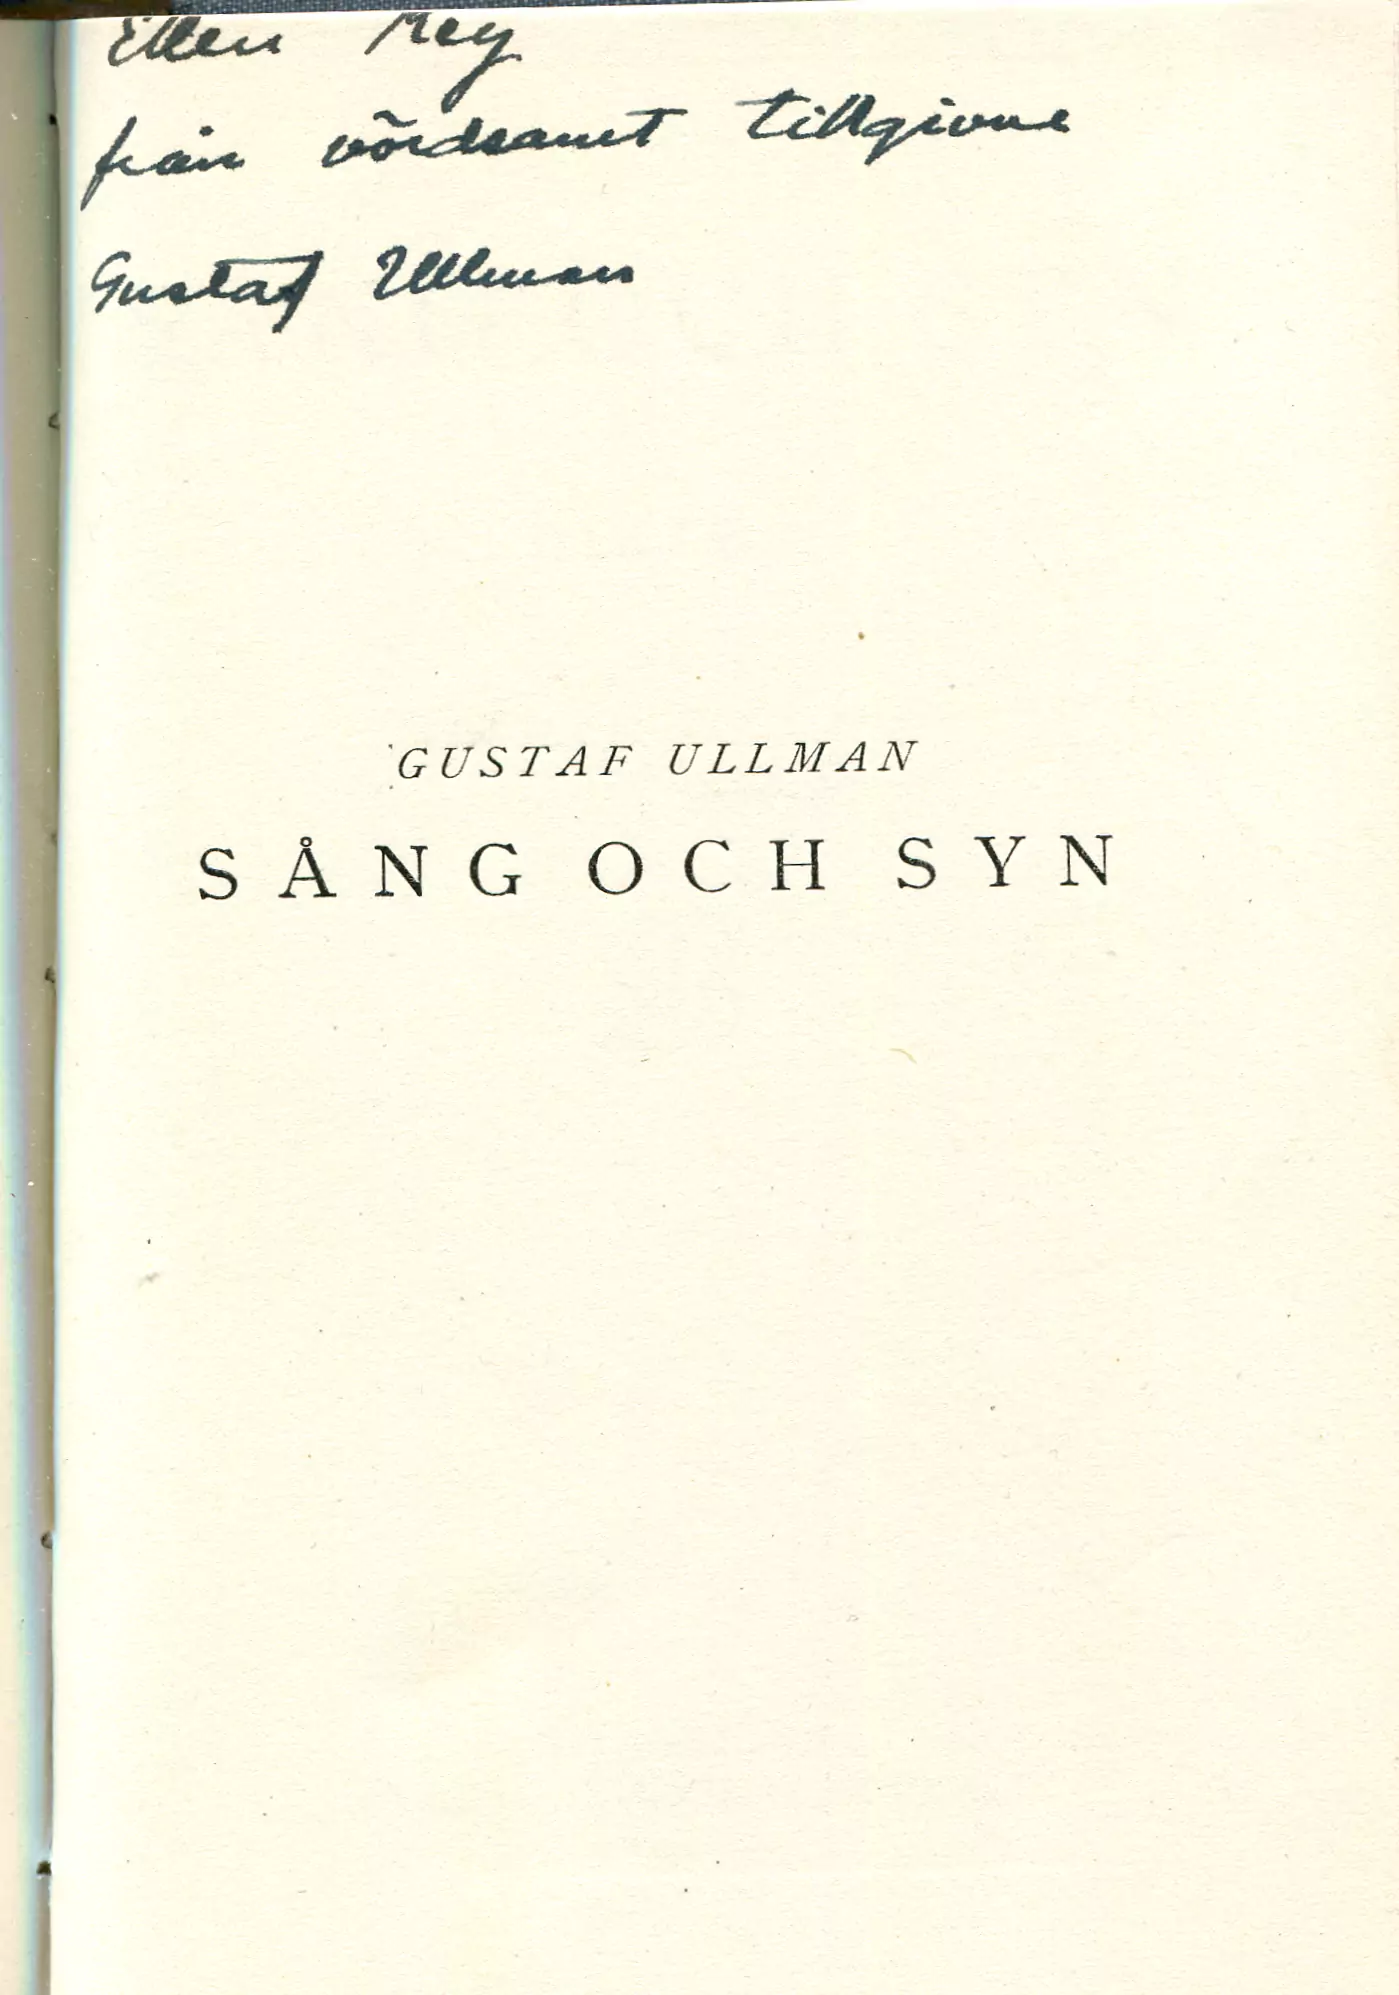 Sång och syn , Stockholm 1924